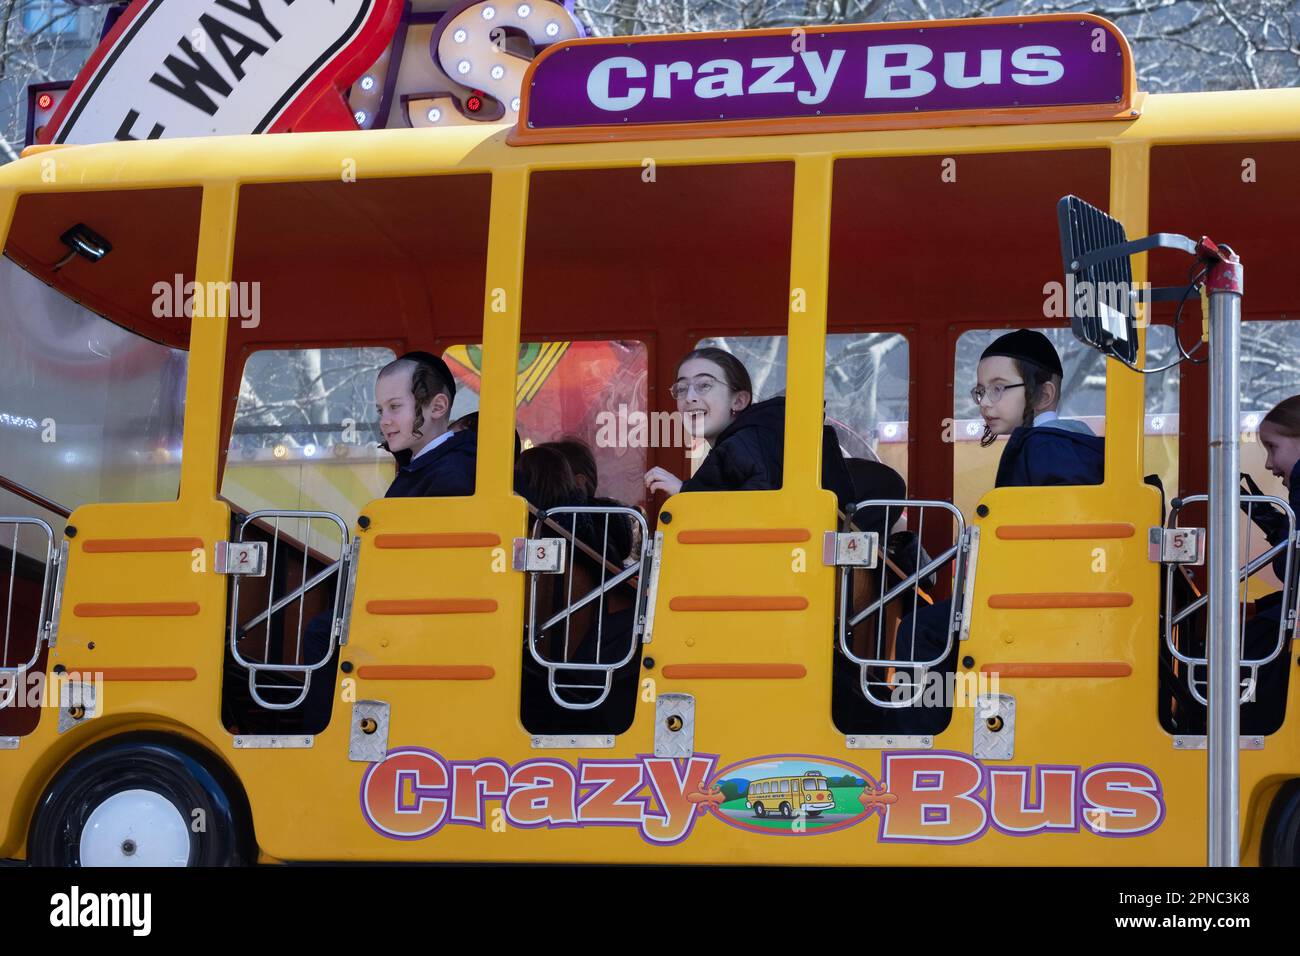 Crazy Bus, Emerald Park